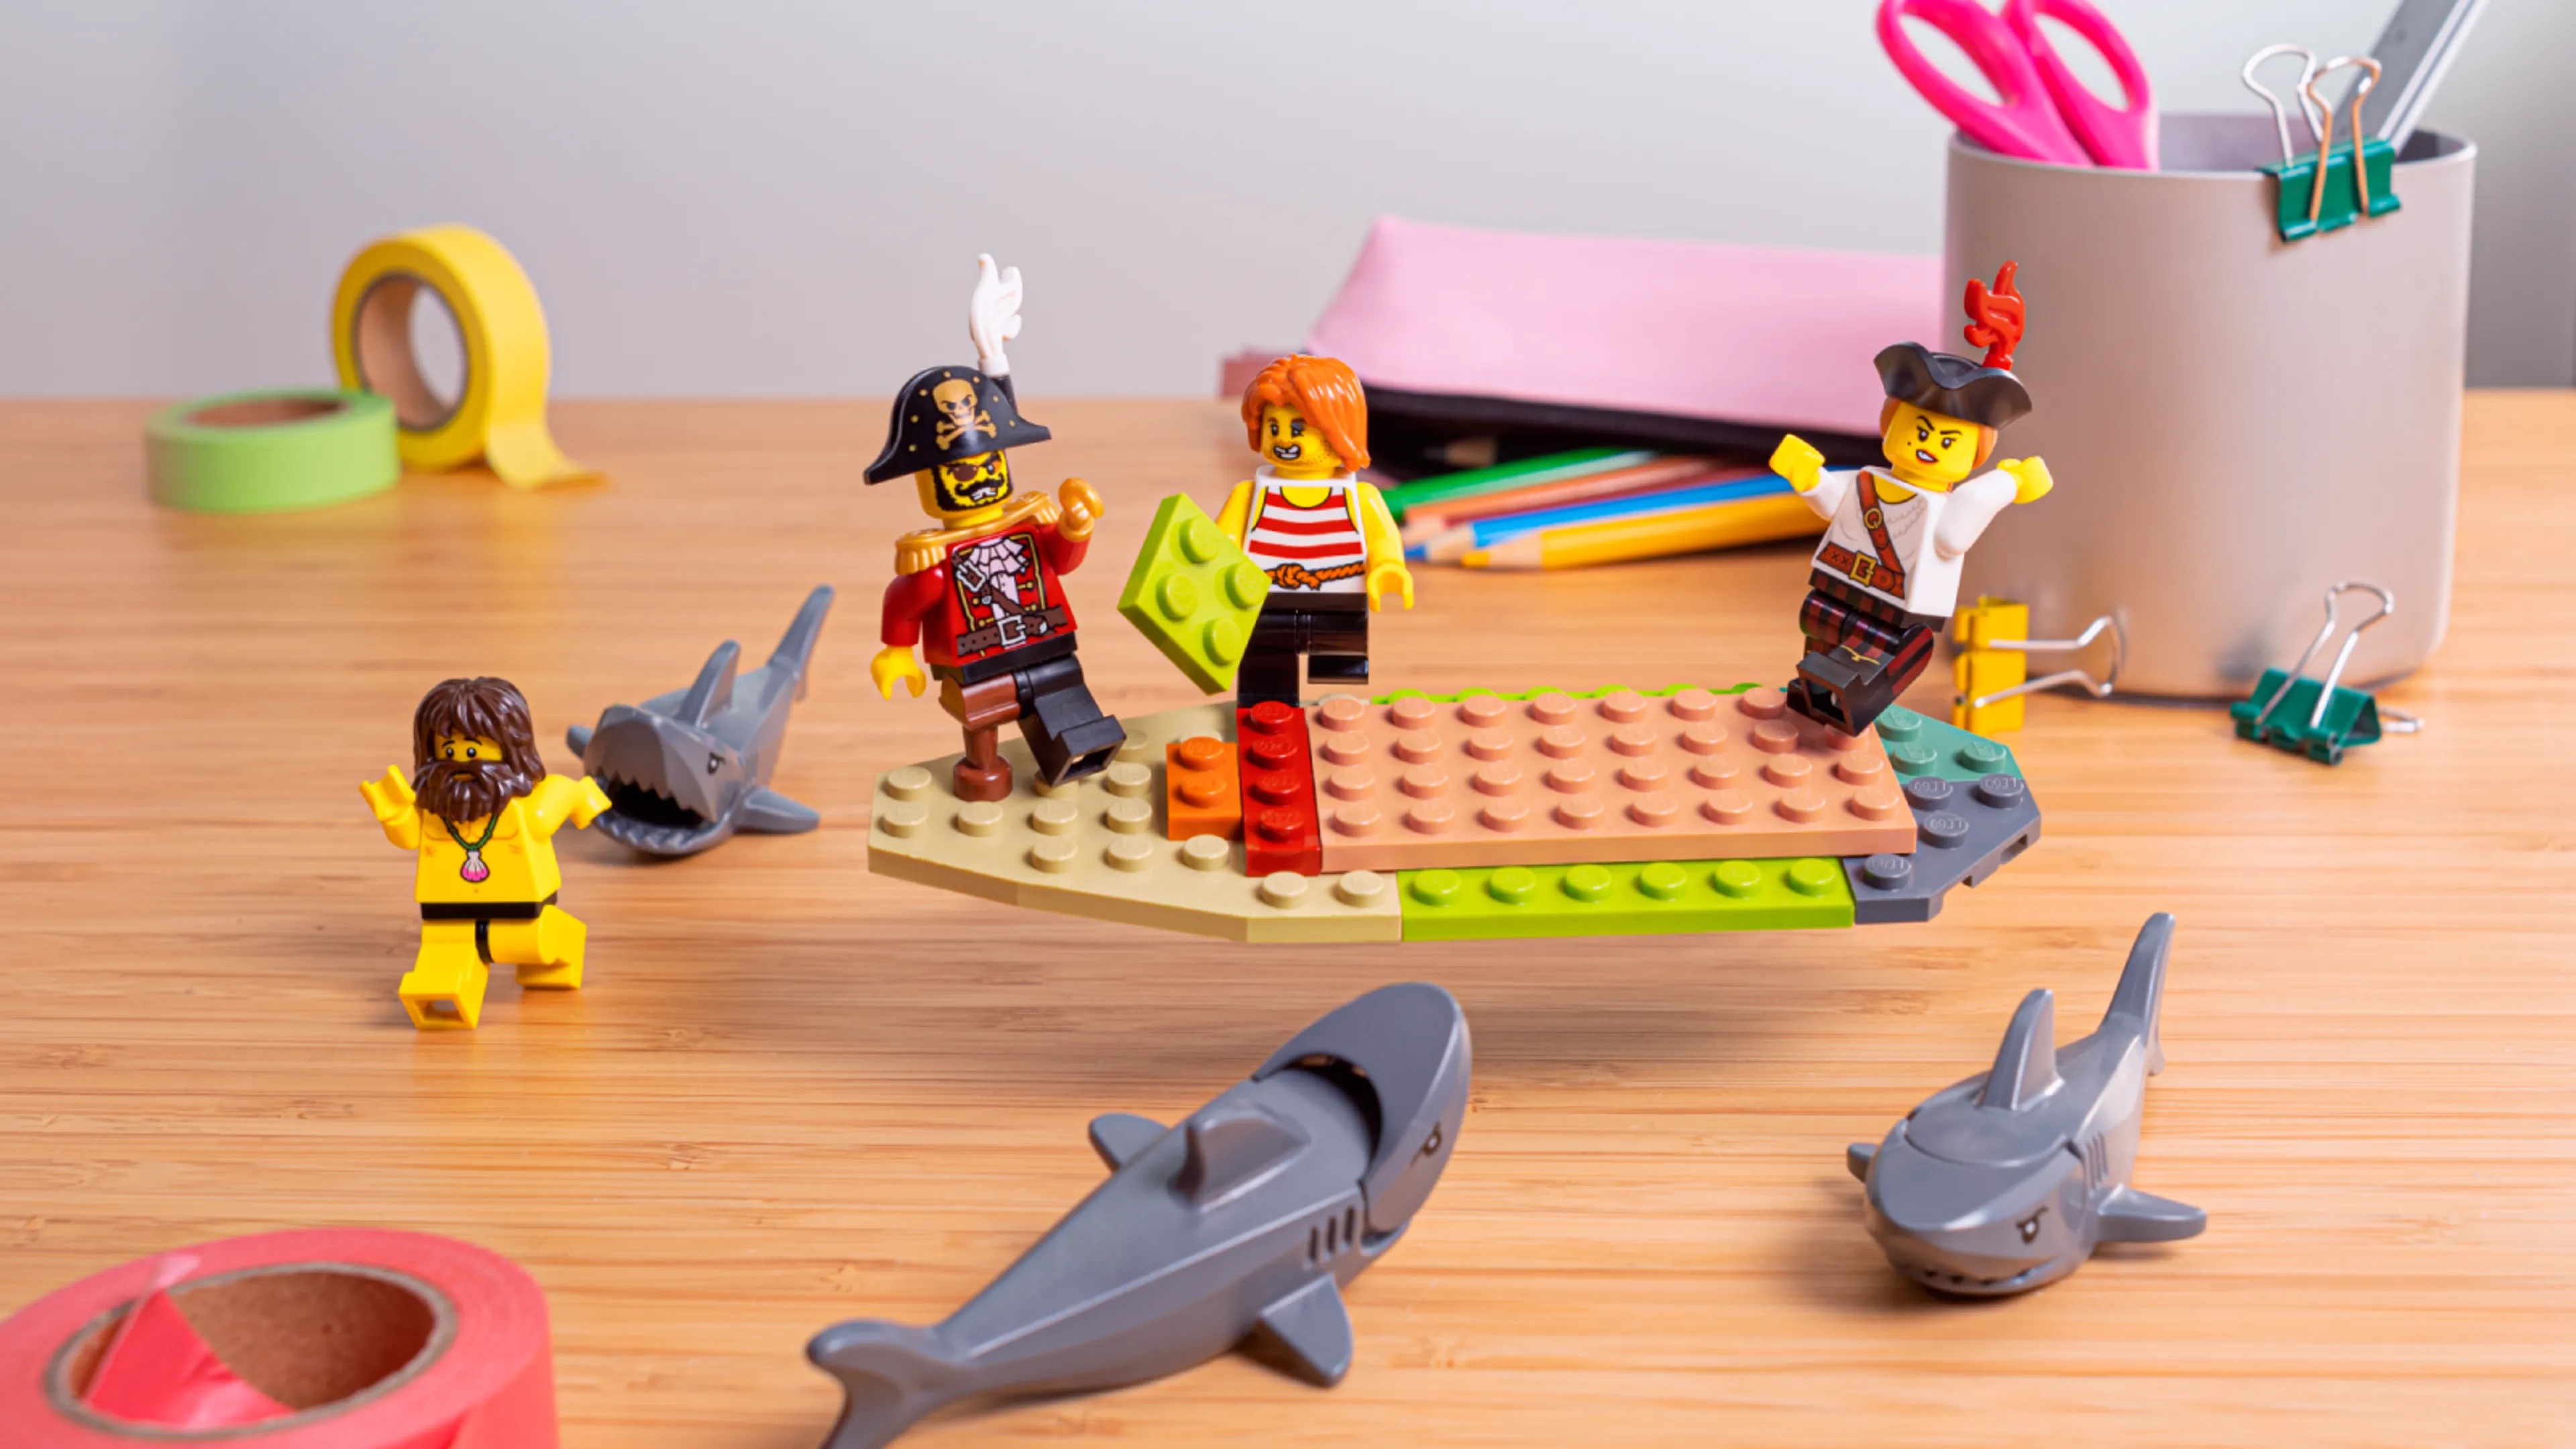 Minifigurines construisant le fond du bateau, entourées de requins